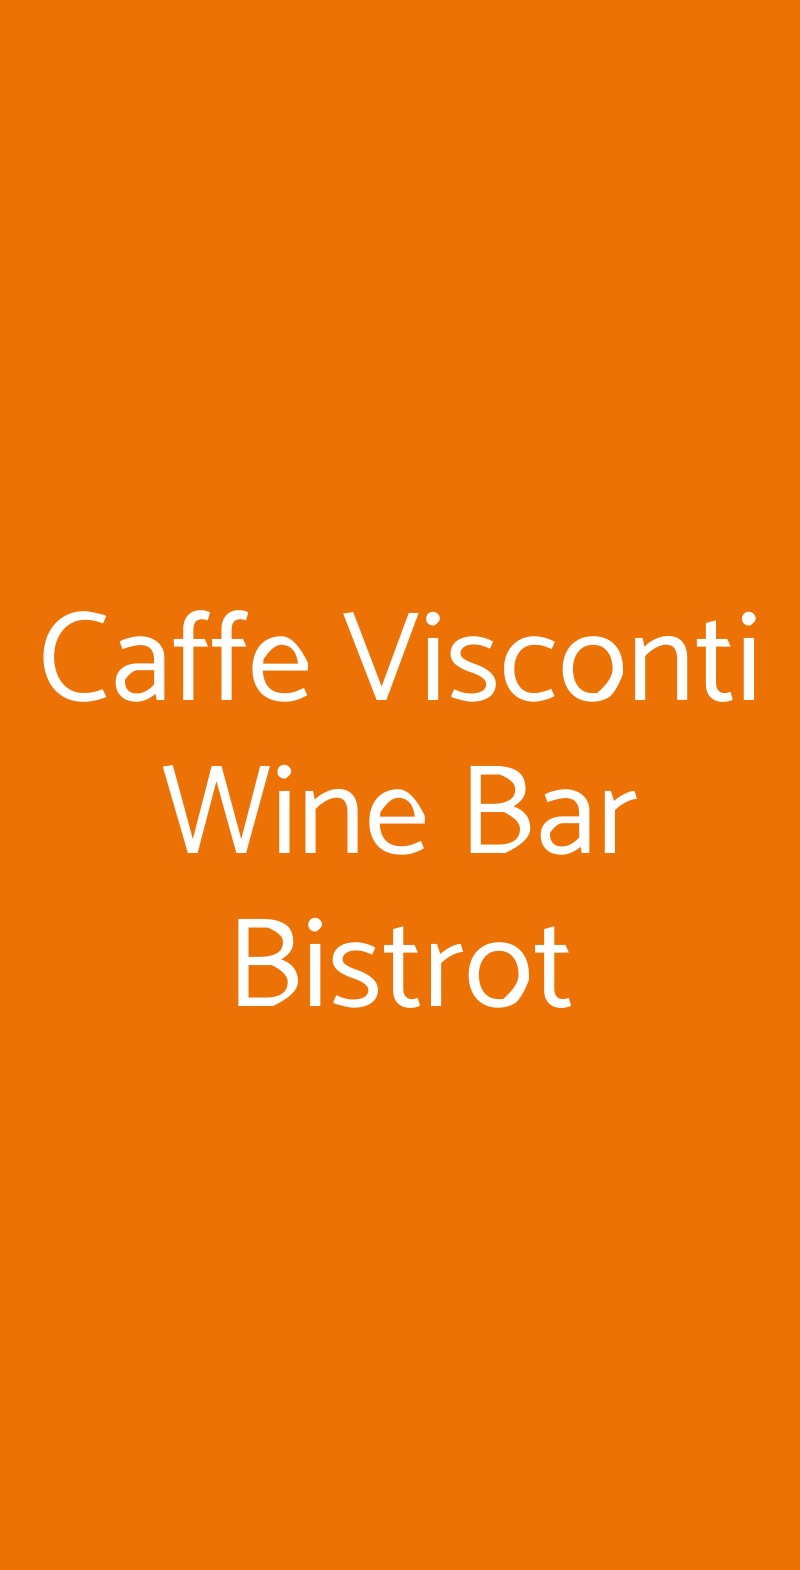 Caffe Visconti Wine Bar Bistrot Valeggio Sul Mincio menù 1 pagina